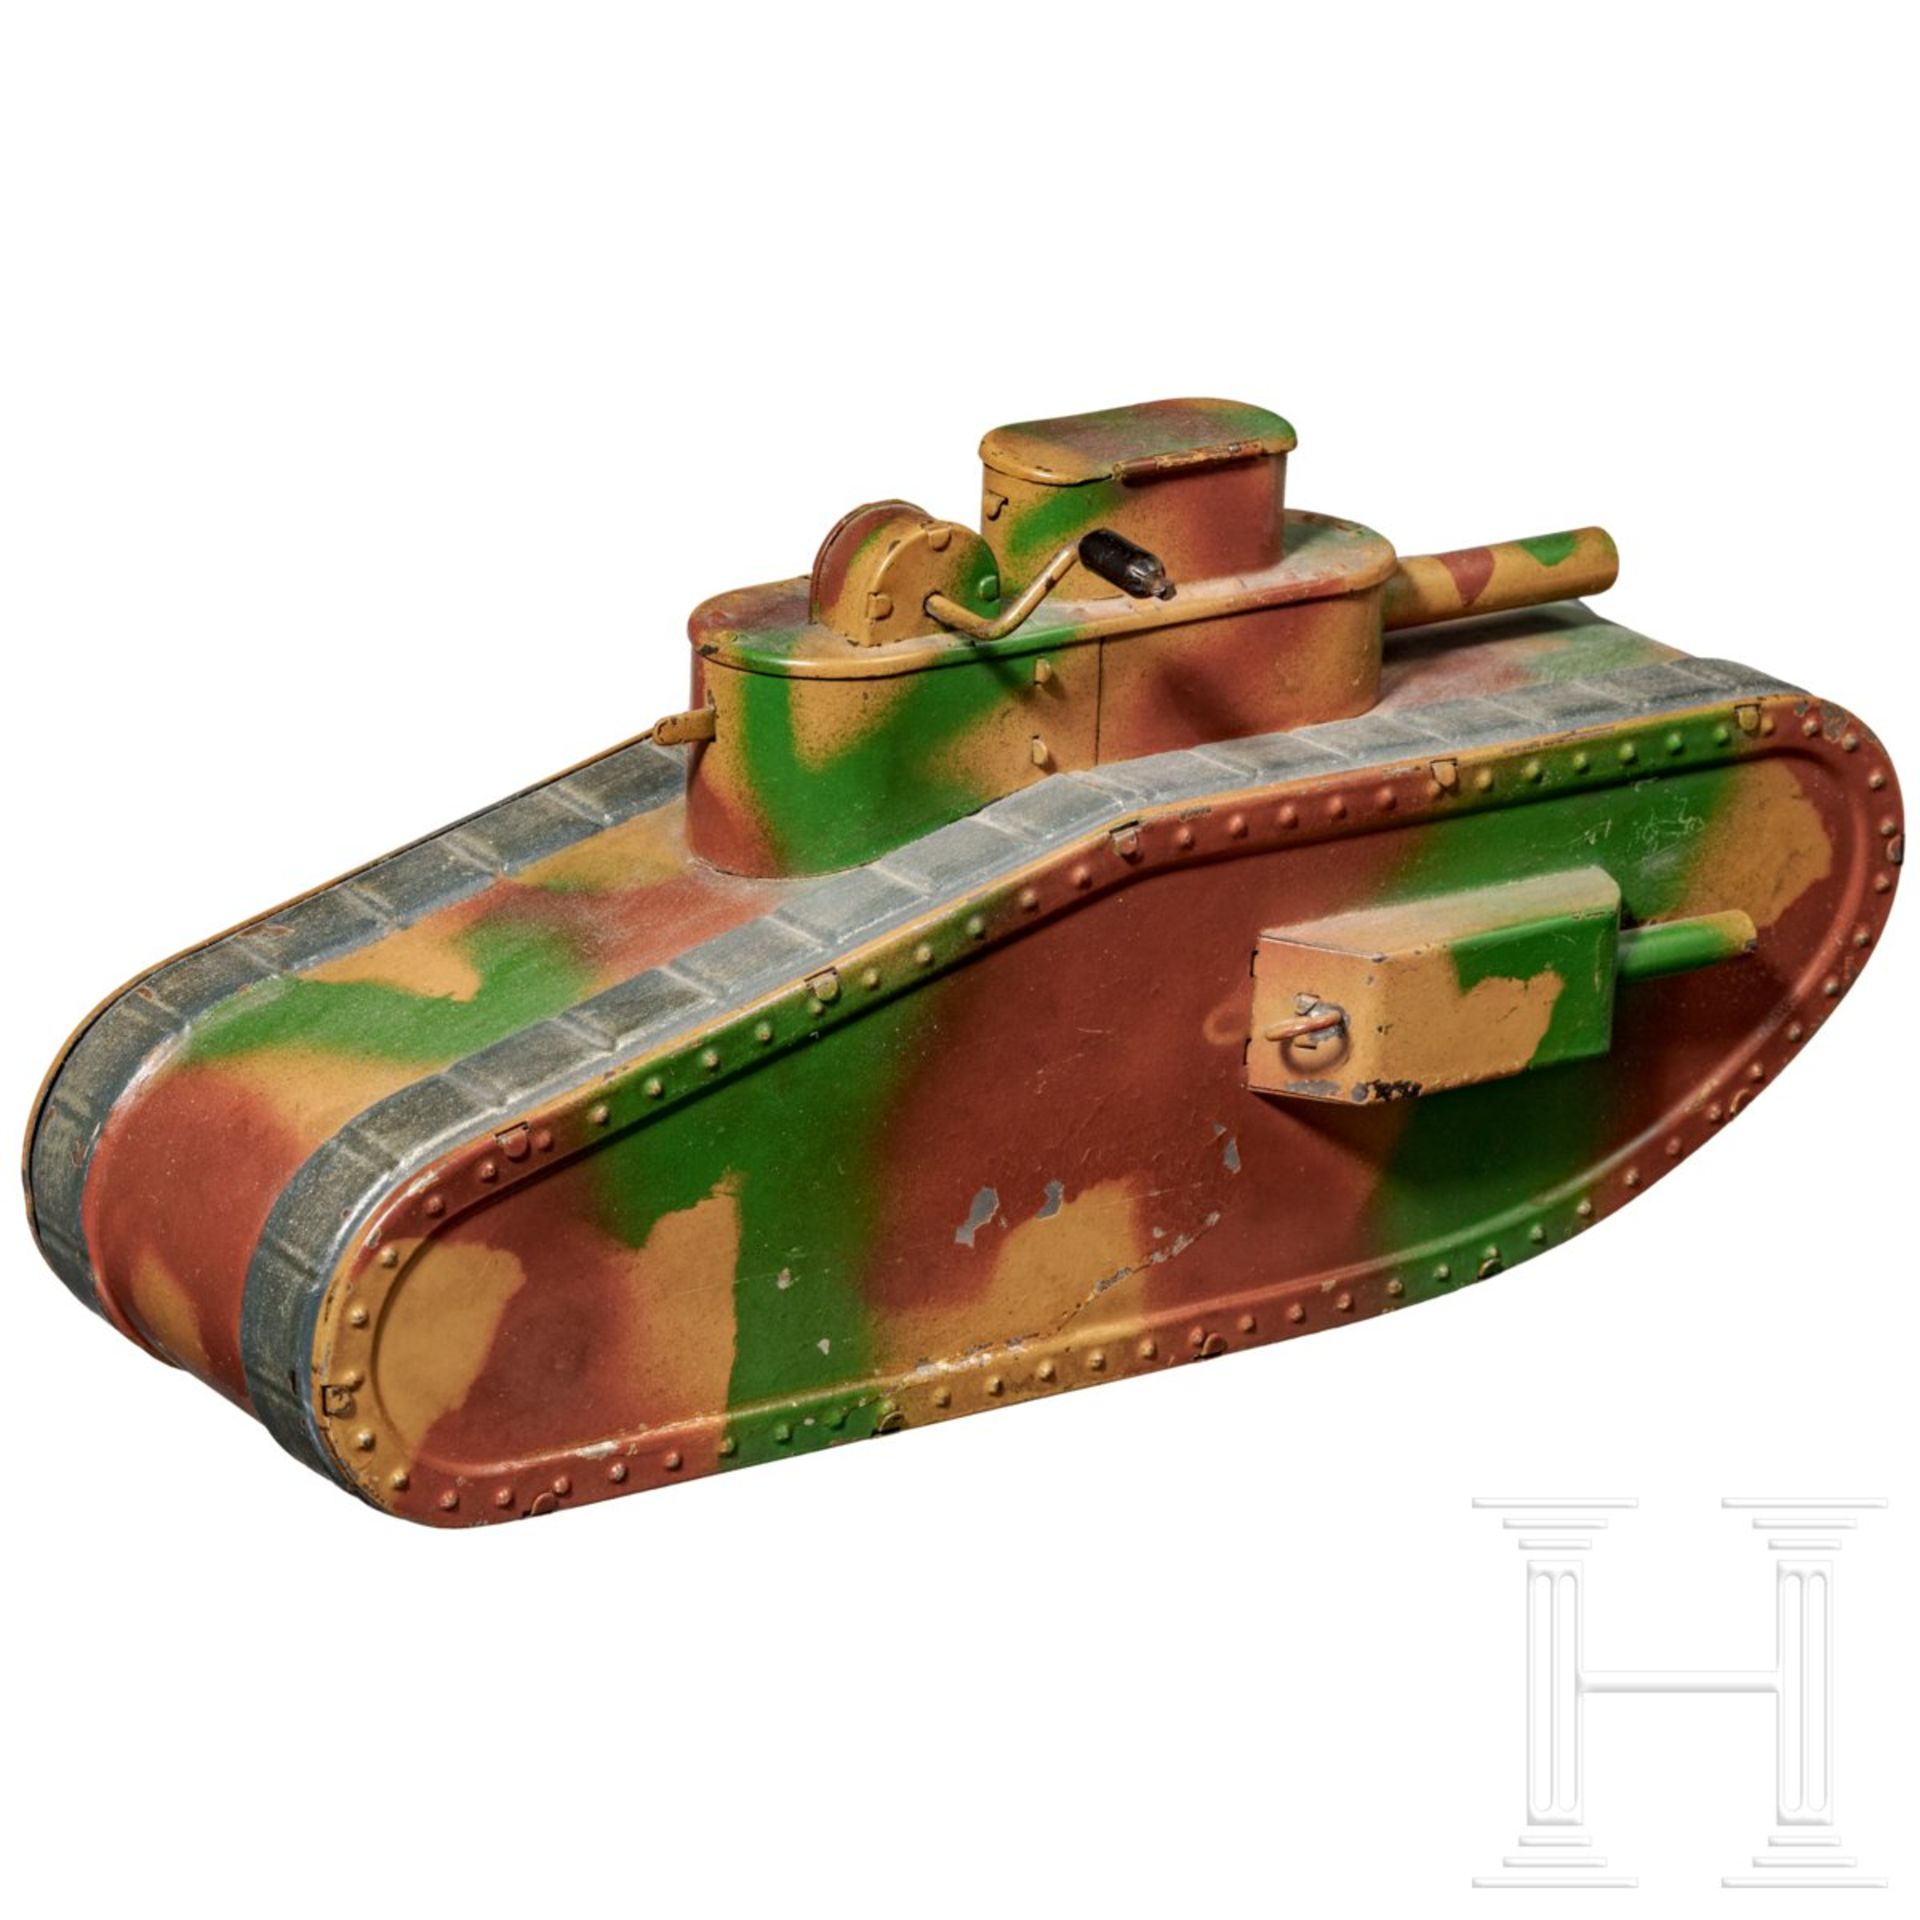 <de>Hausser-Tank 0/730 mimikry mit zwei Elastolin-Panzersoldaten<br>Hausser-Tank 0/730, Blech-Massea - Bild 2 aus 9